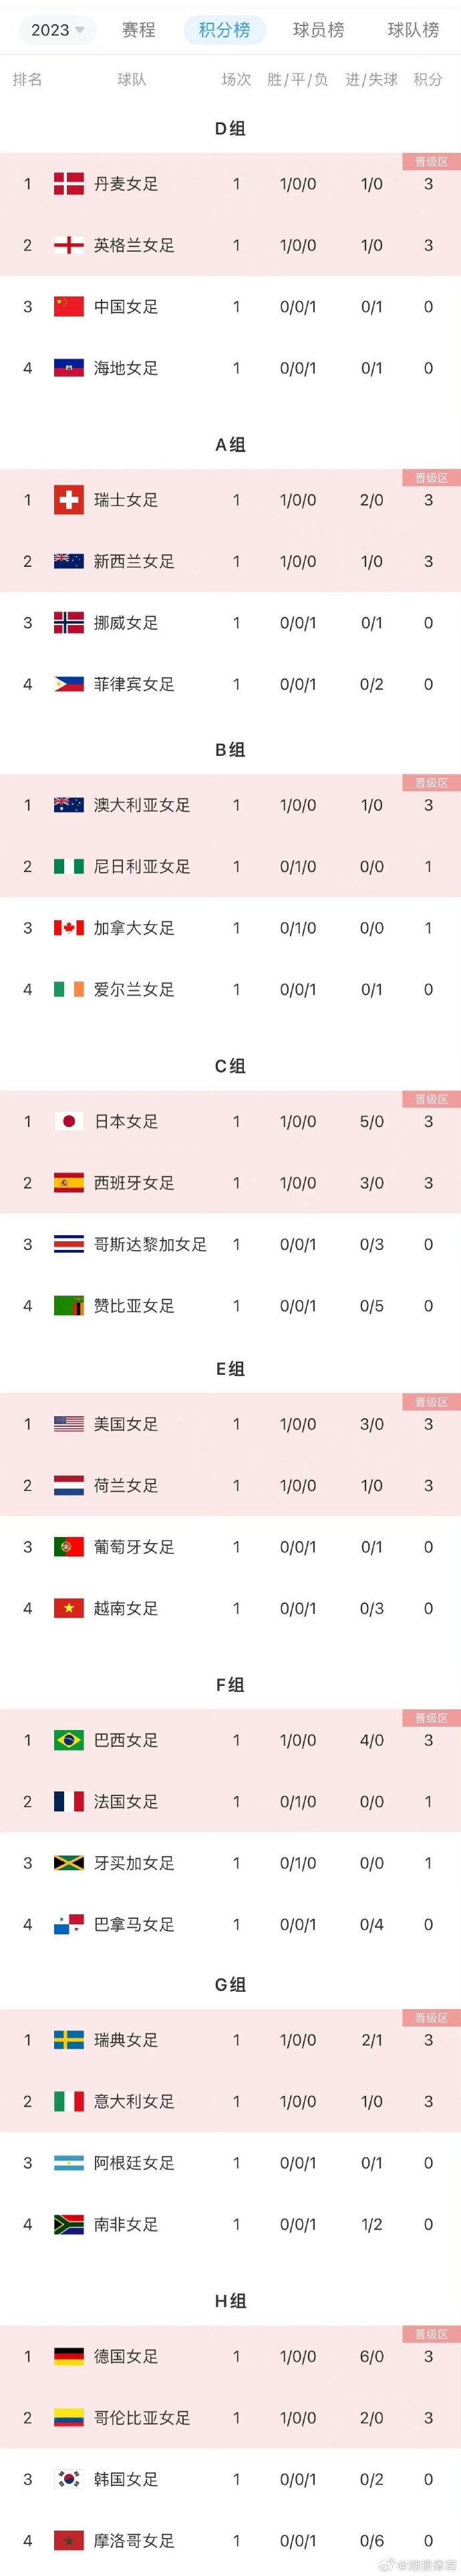 中国女足世界杯首轮过后积分榜(第一轮过后中国女足积分情况)